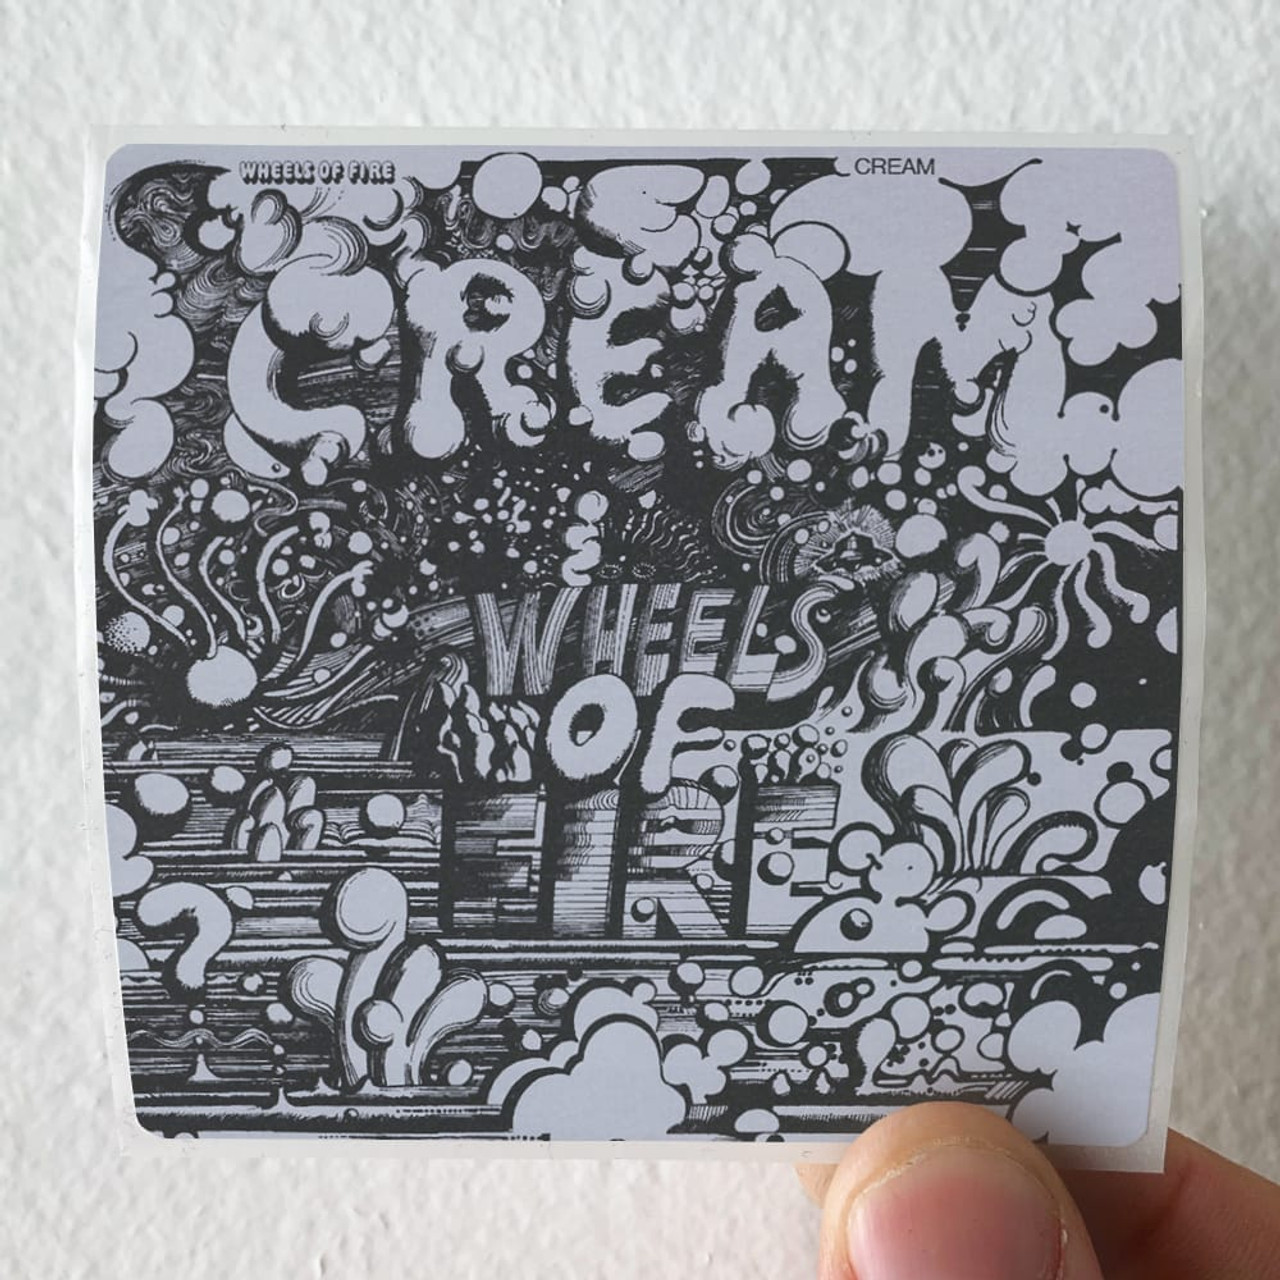 Cream Wheels Of Fire In The Studio Album Cover Sticker